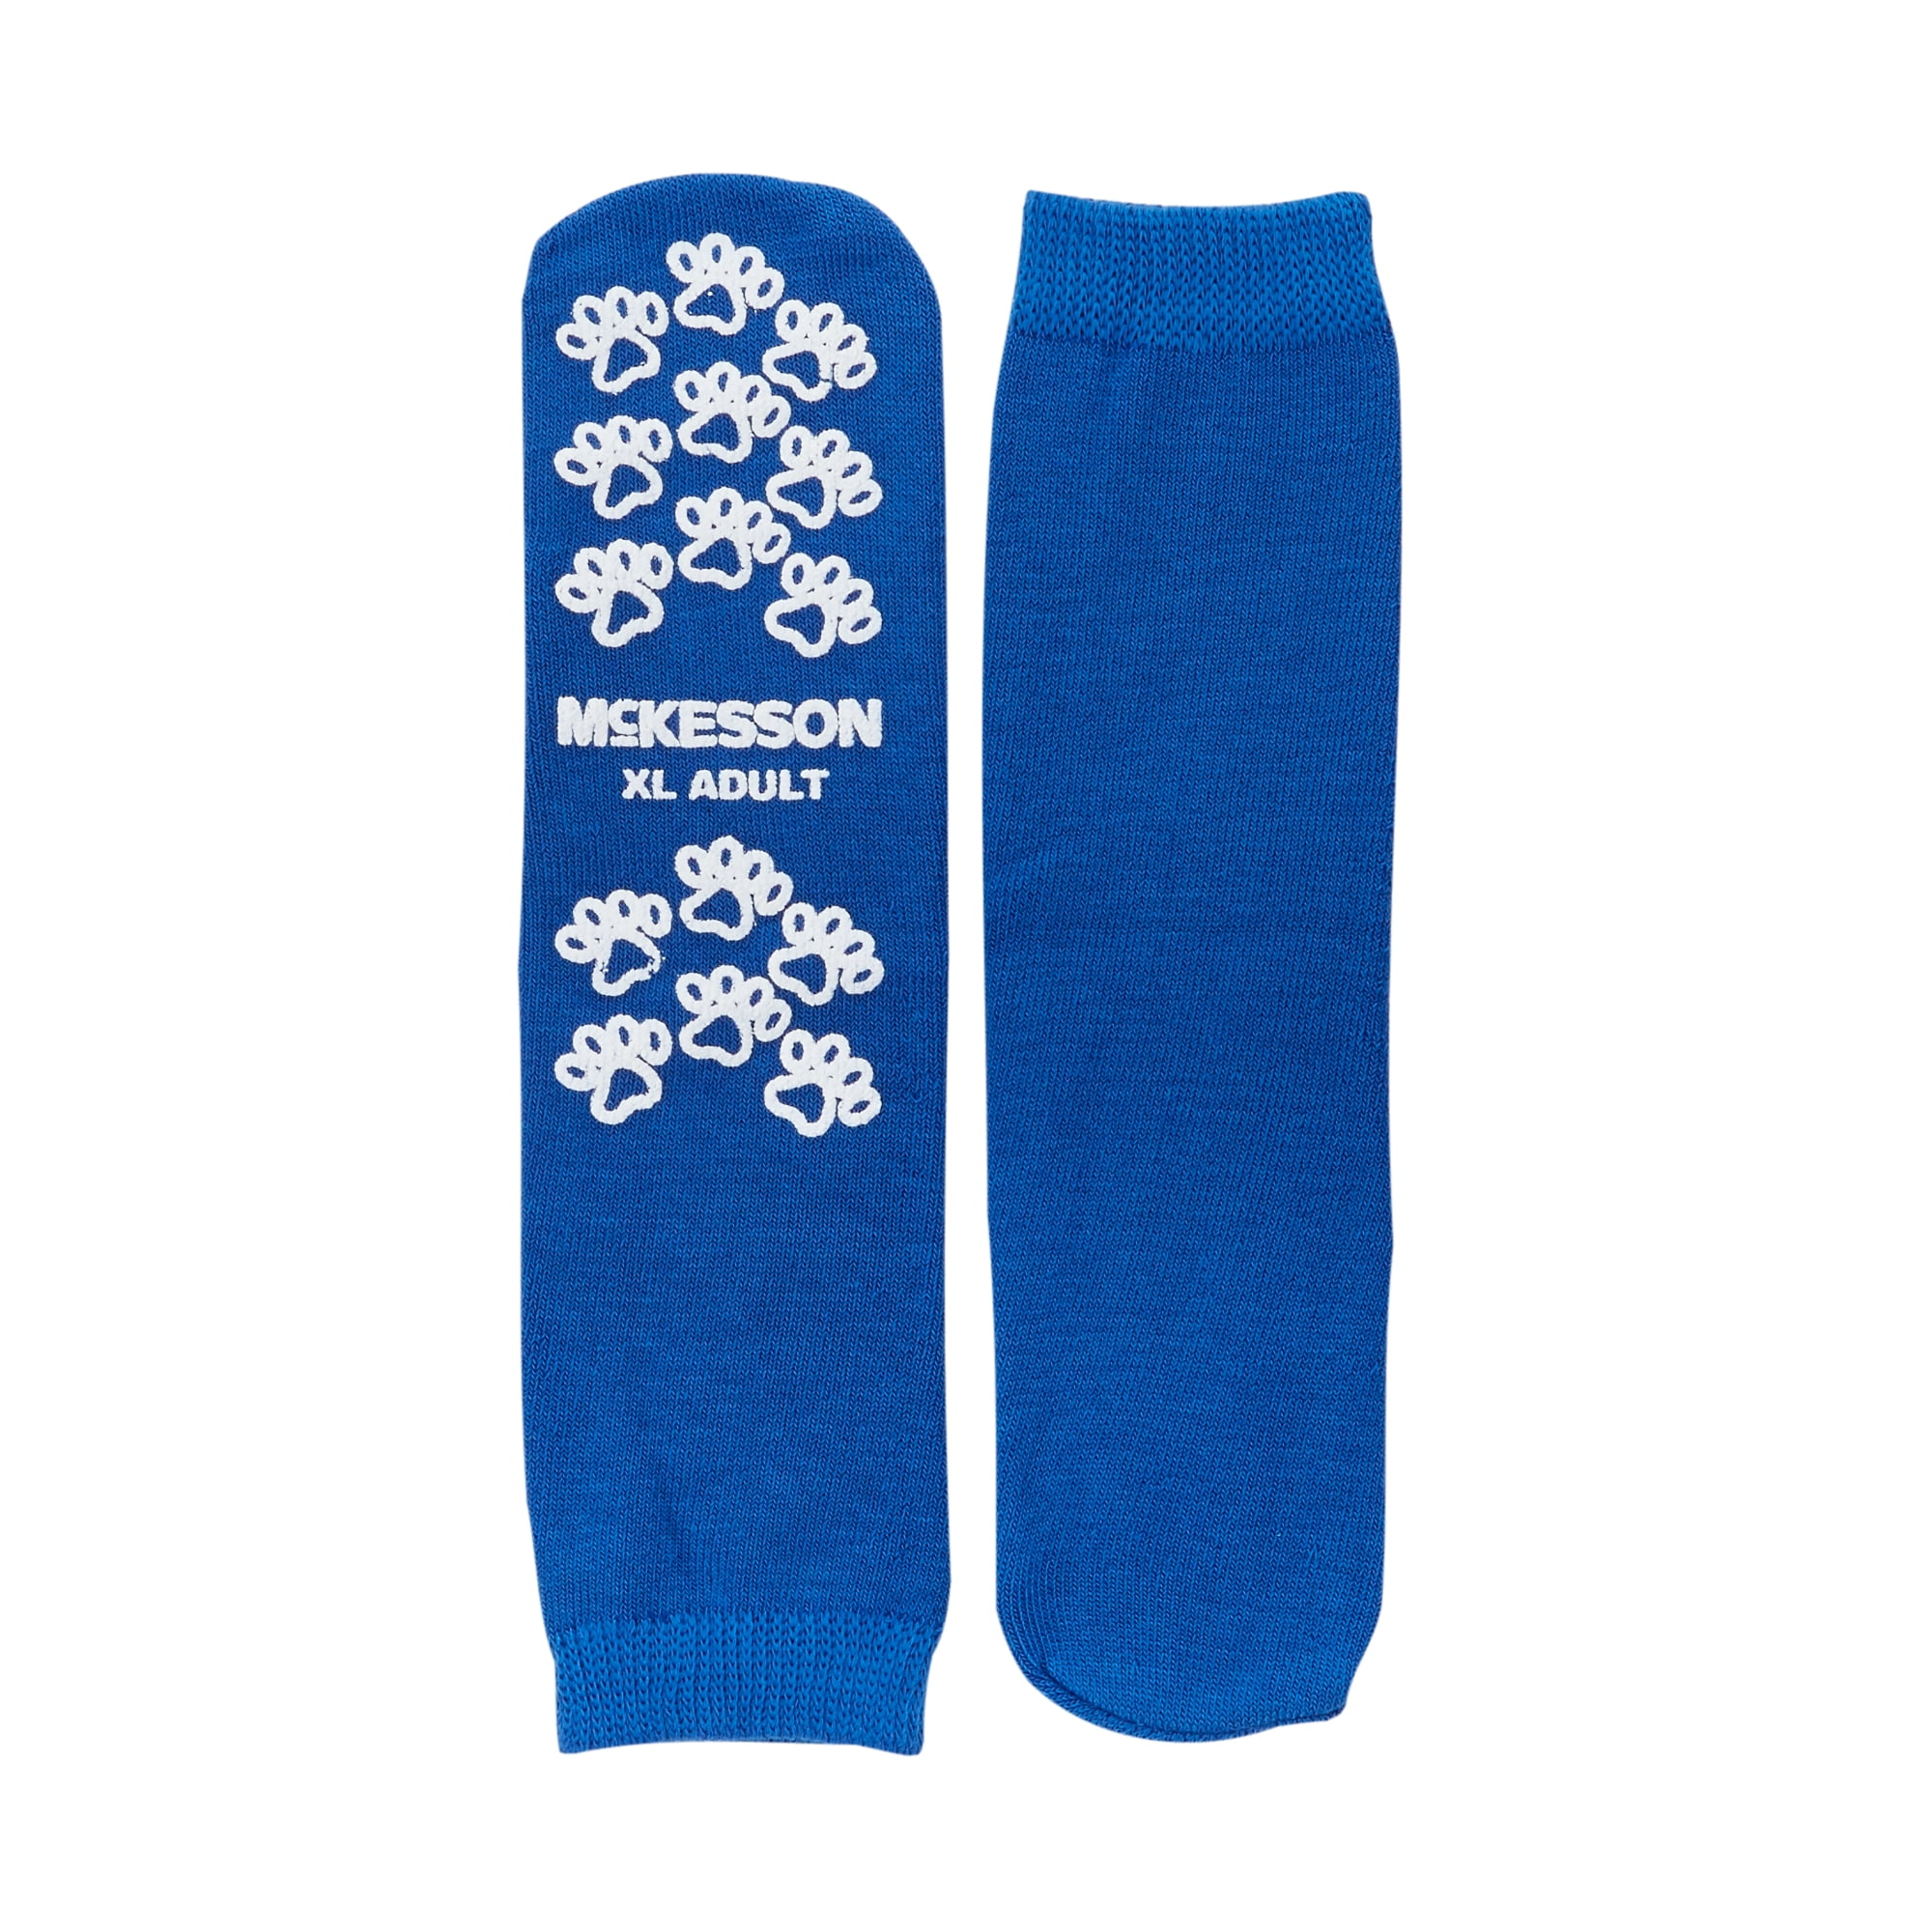 McKesson Slipper Socks, Non-Slip Grip Hospital Socks - Blue, Size XL, 2 Pair